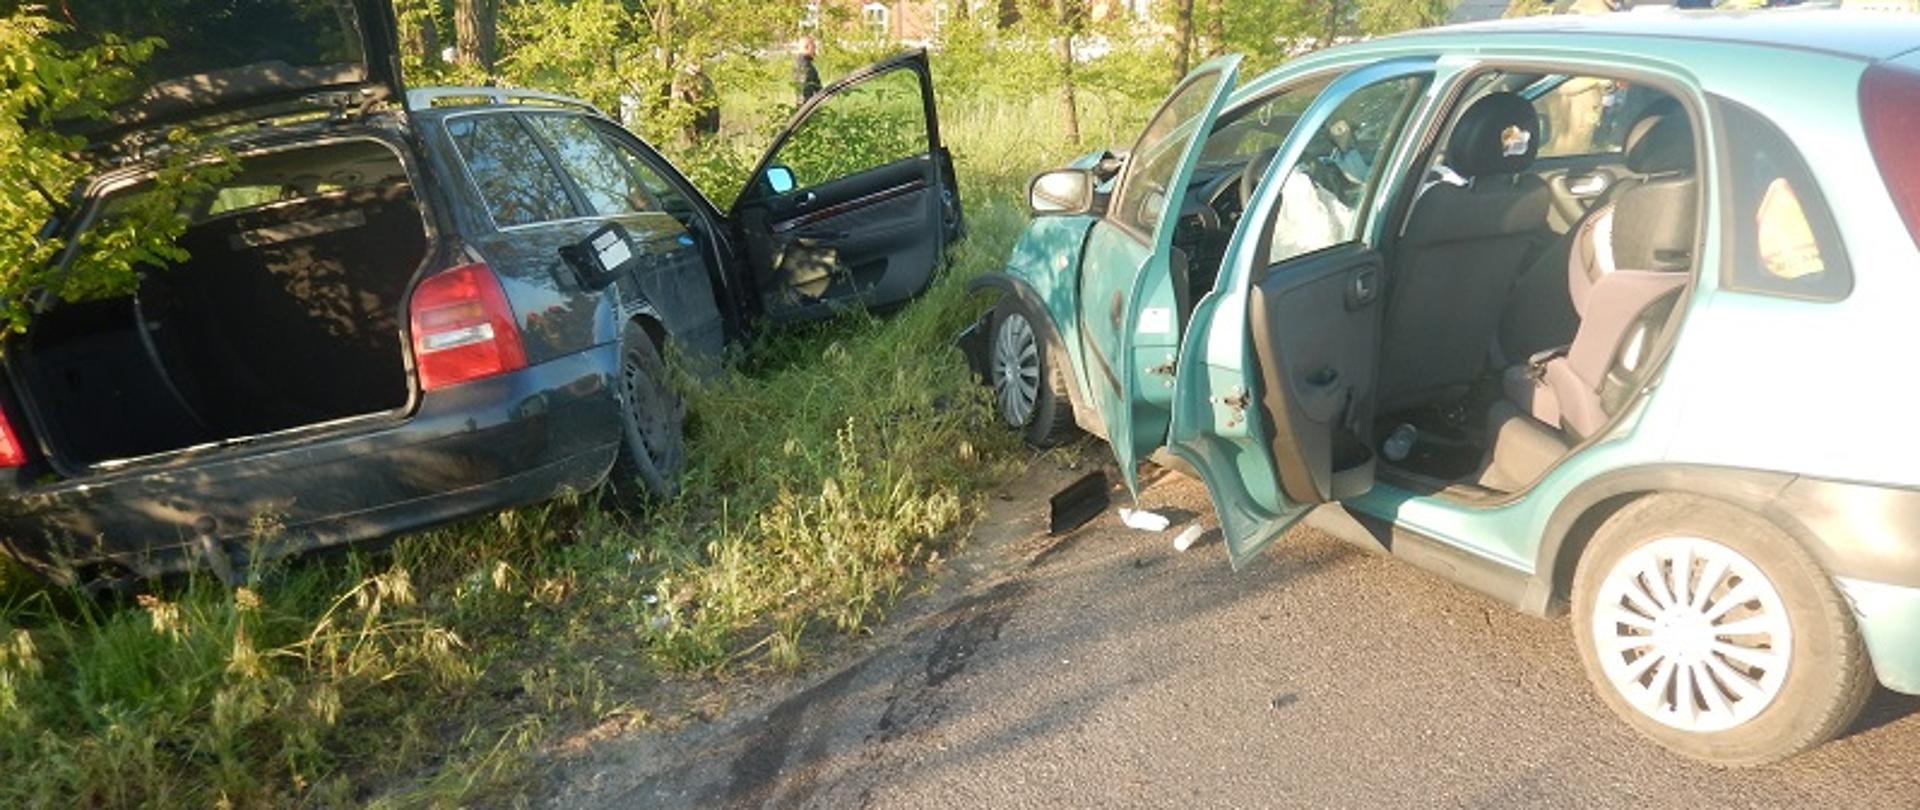 Zdjęcie przedstawia dwa samochody osobowe po wypadku drogowym